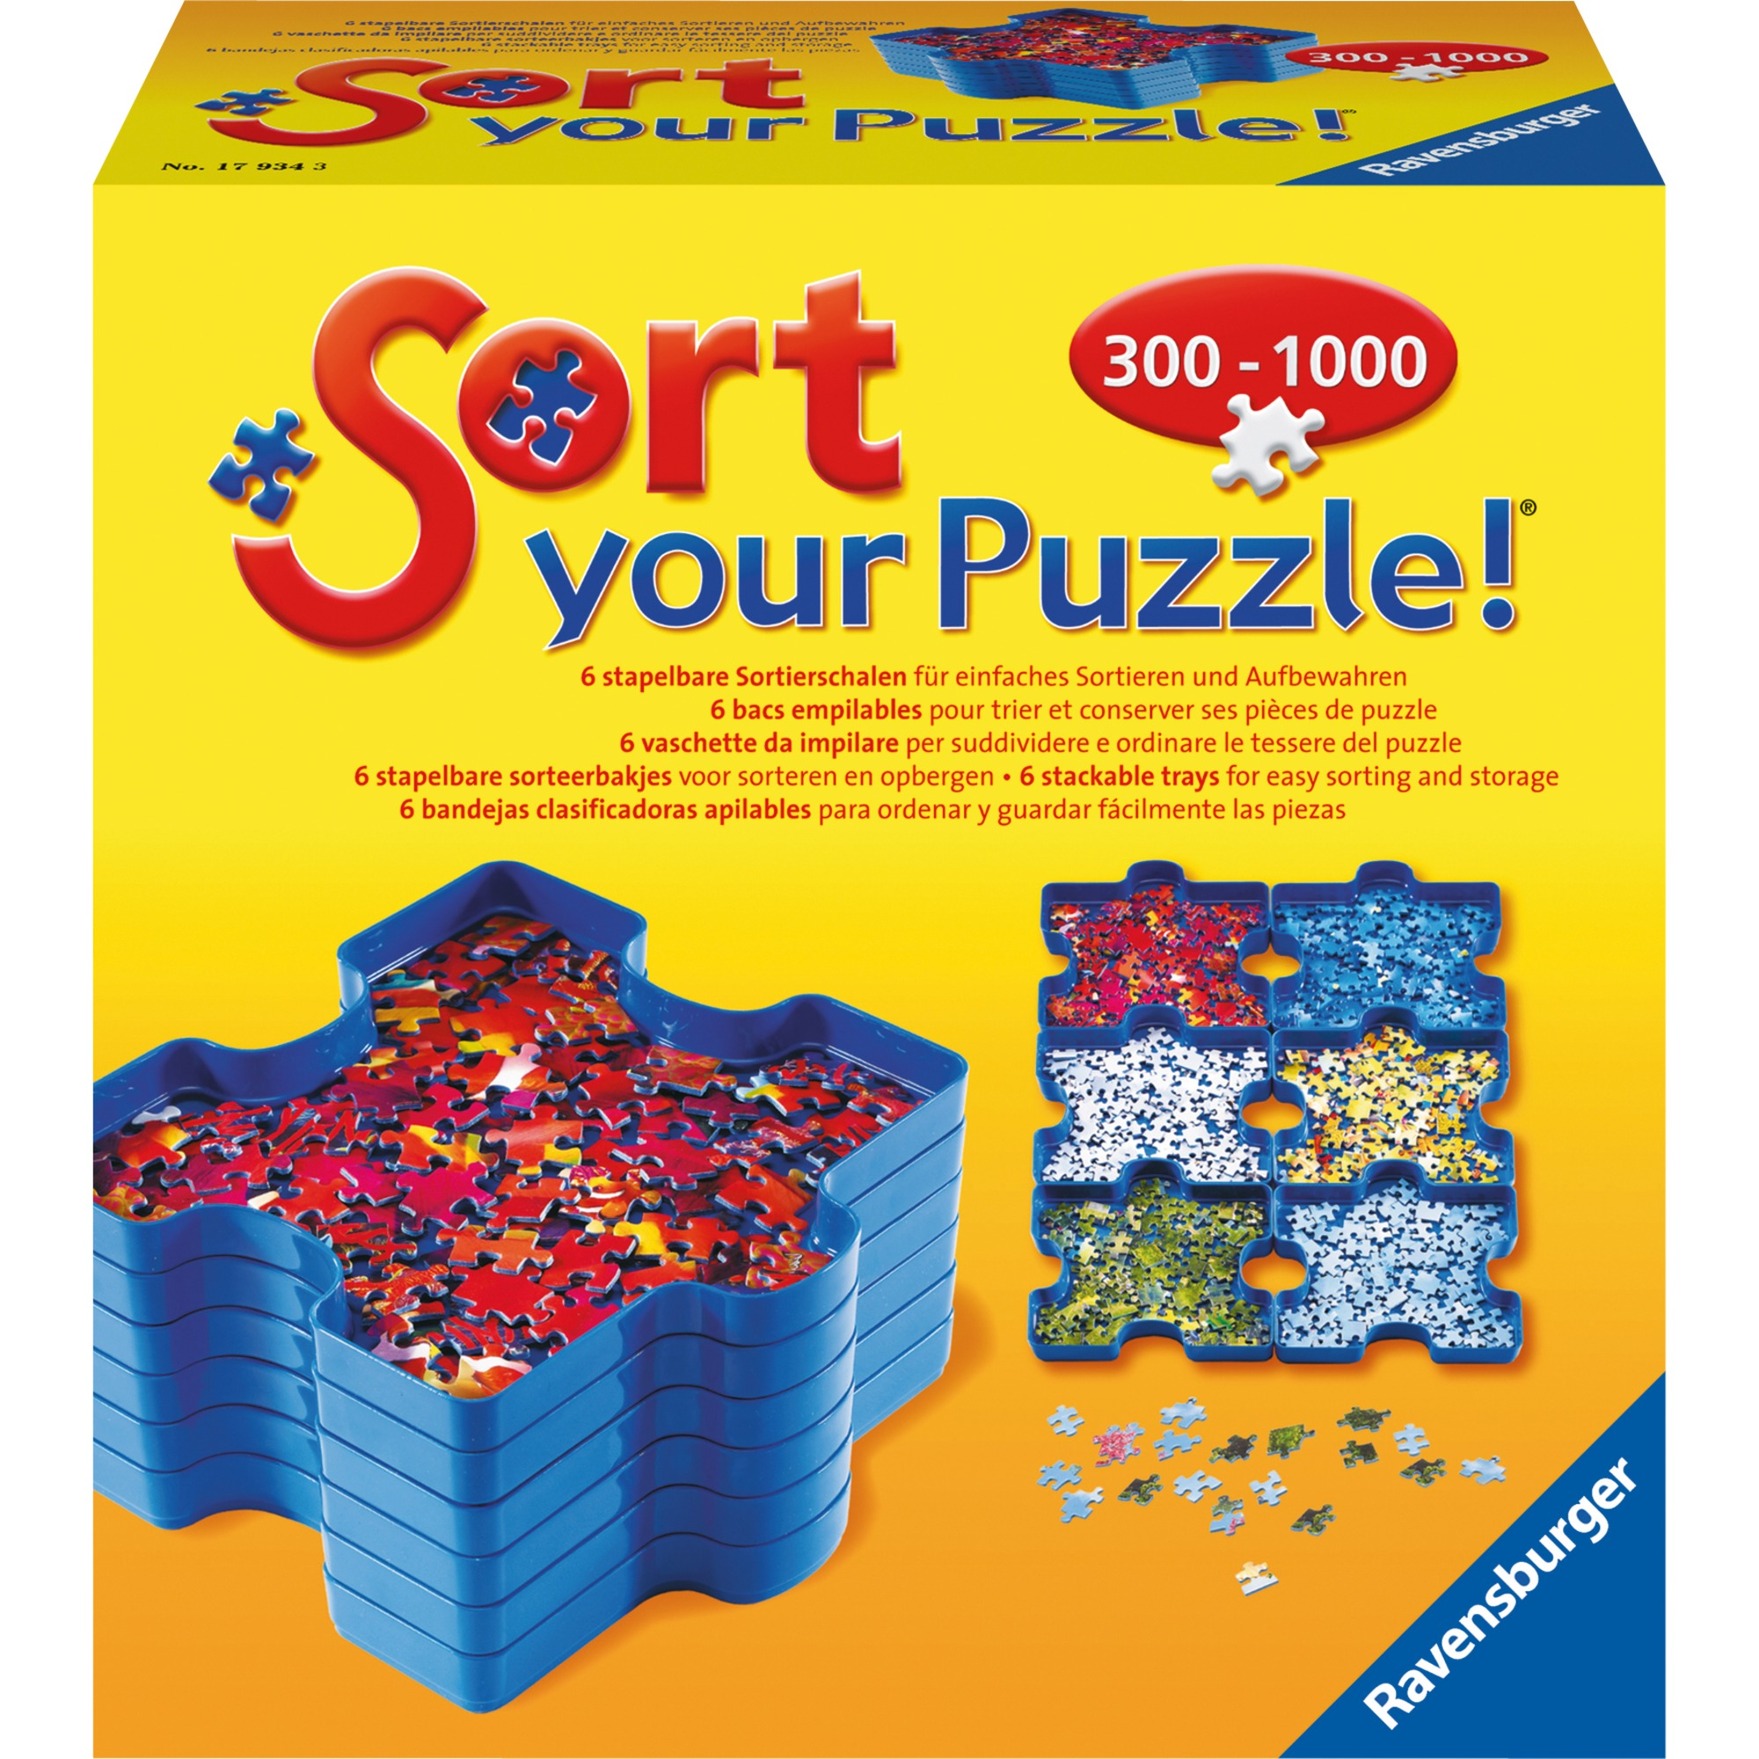 Image of Alternate - Sort Your Puzzle! online einkaufen bei Alternate